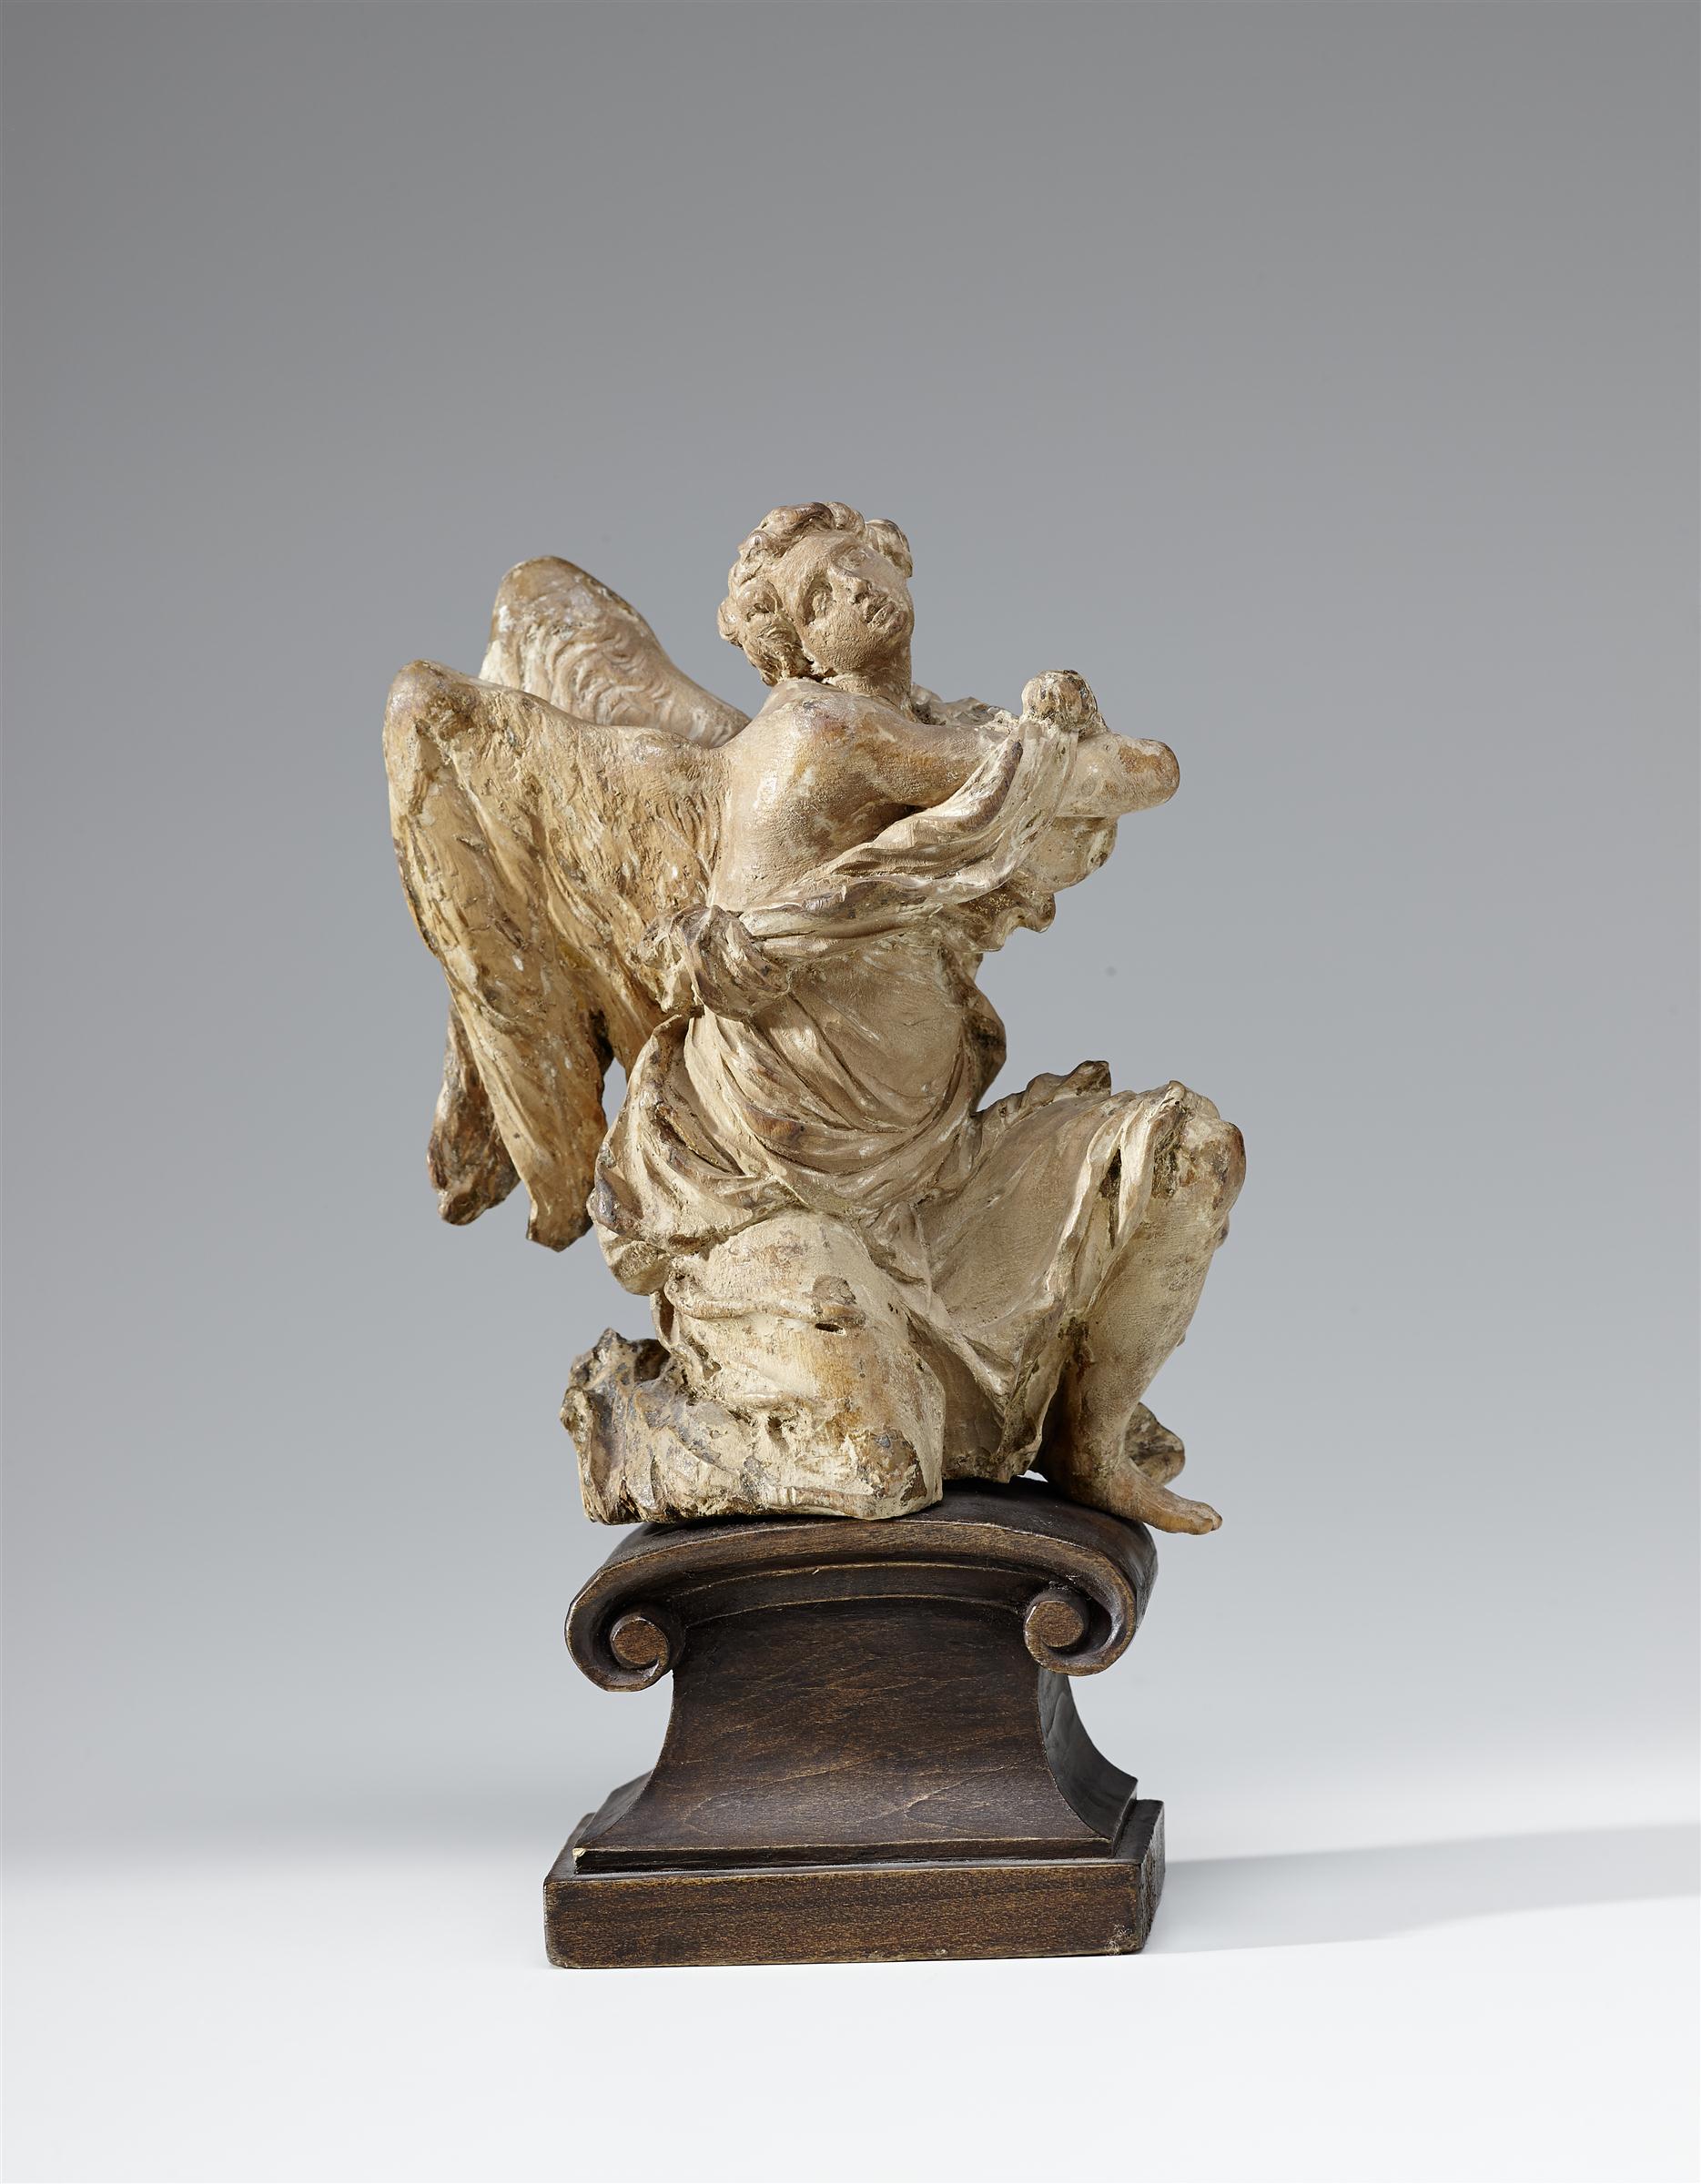 Bozzetti für ein Engelpaar, Michael Zürn d. J., 1682, Lindenholz, Salzburg Museum Inv.-Nr. RO 0539